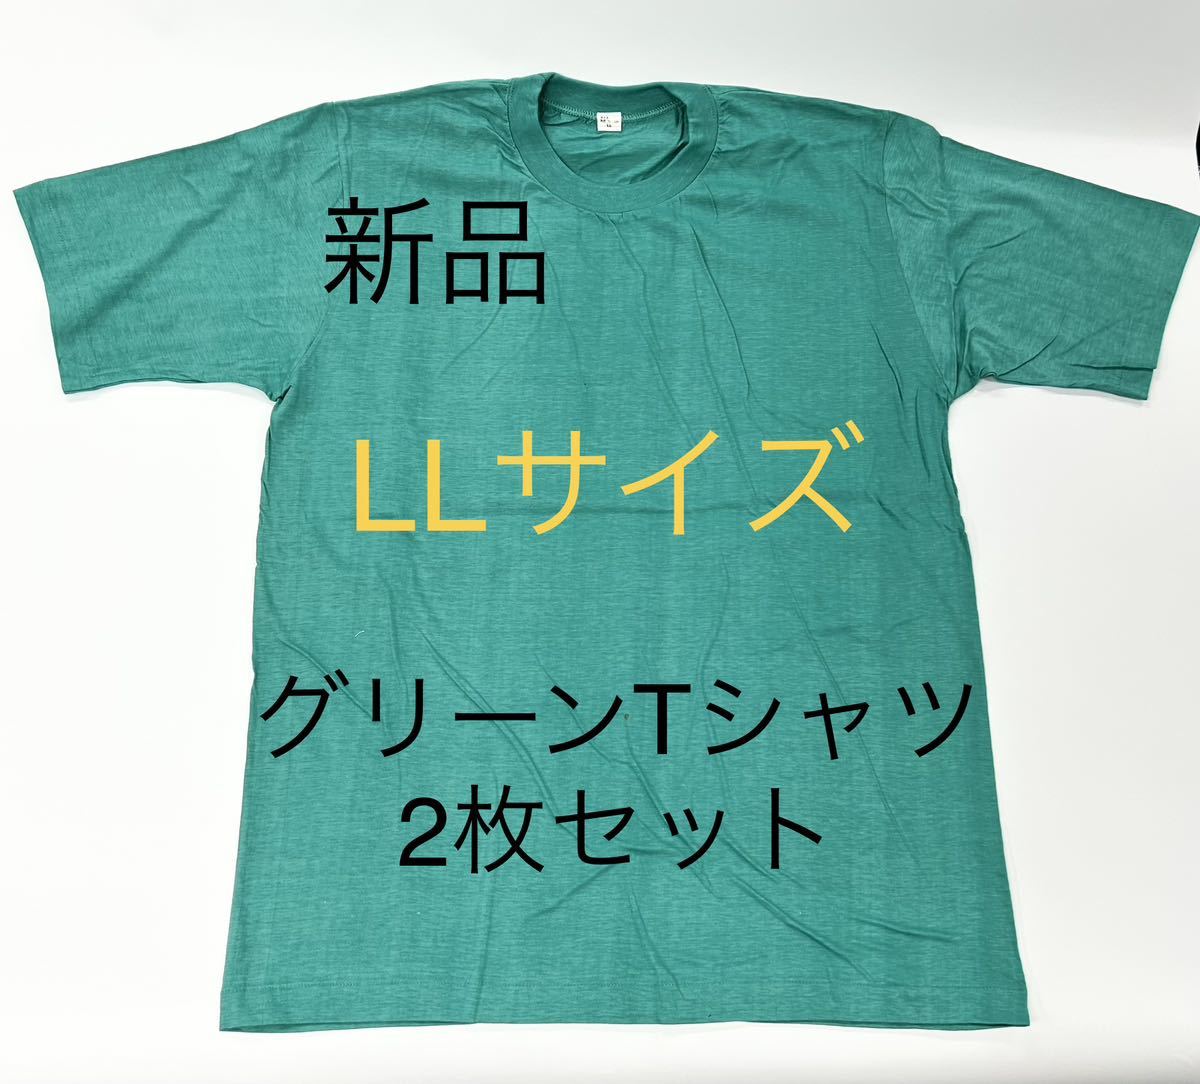 最終出品 送料込み 新品LLサイズグリーンTシャツ2枚セット 半袖Tシャツ